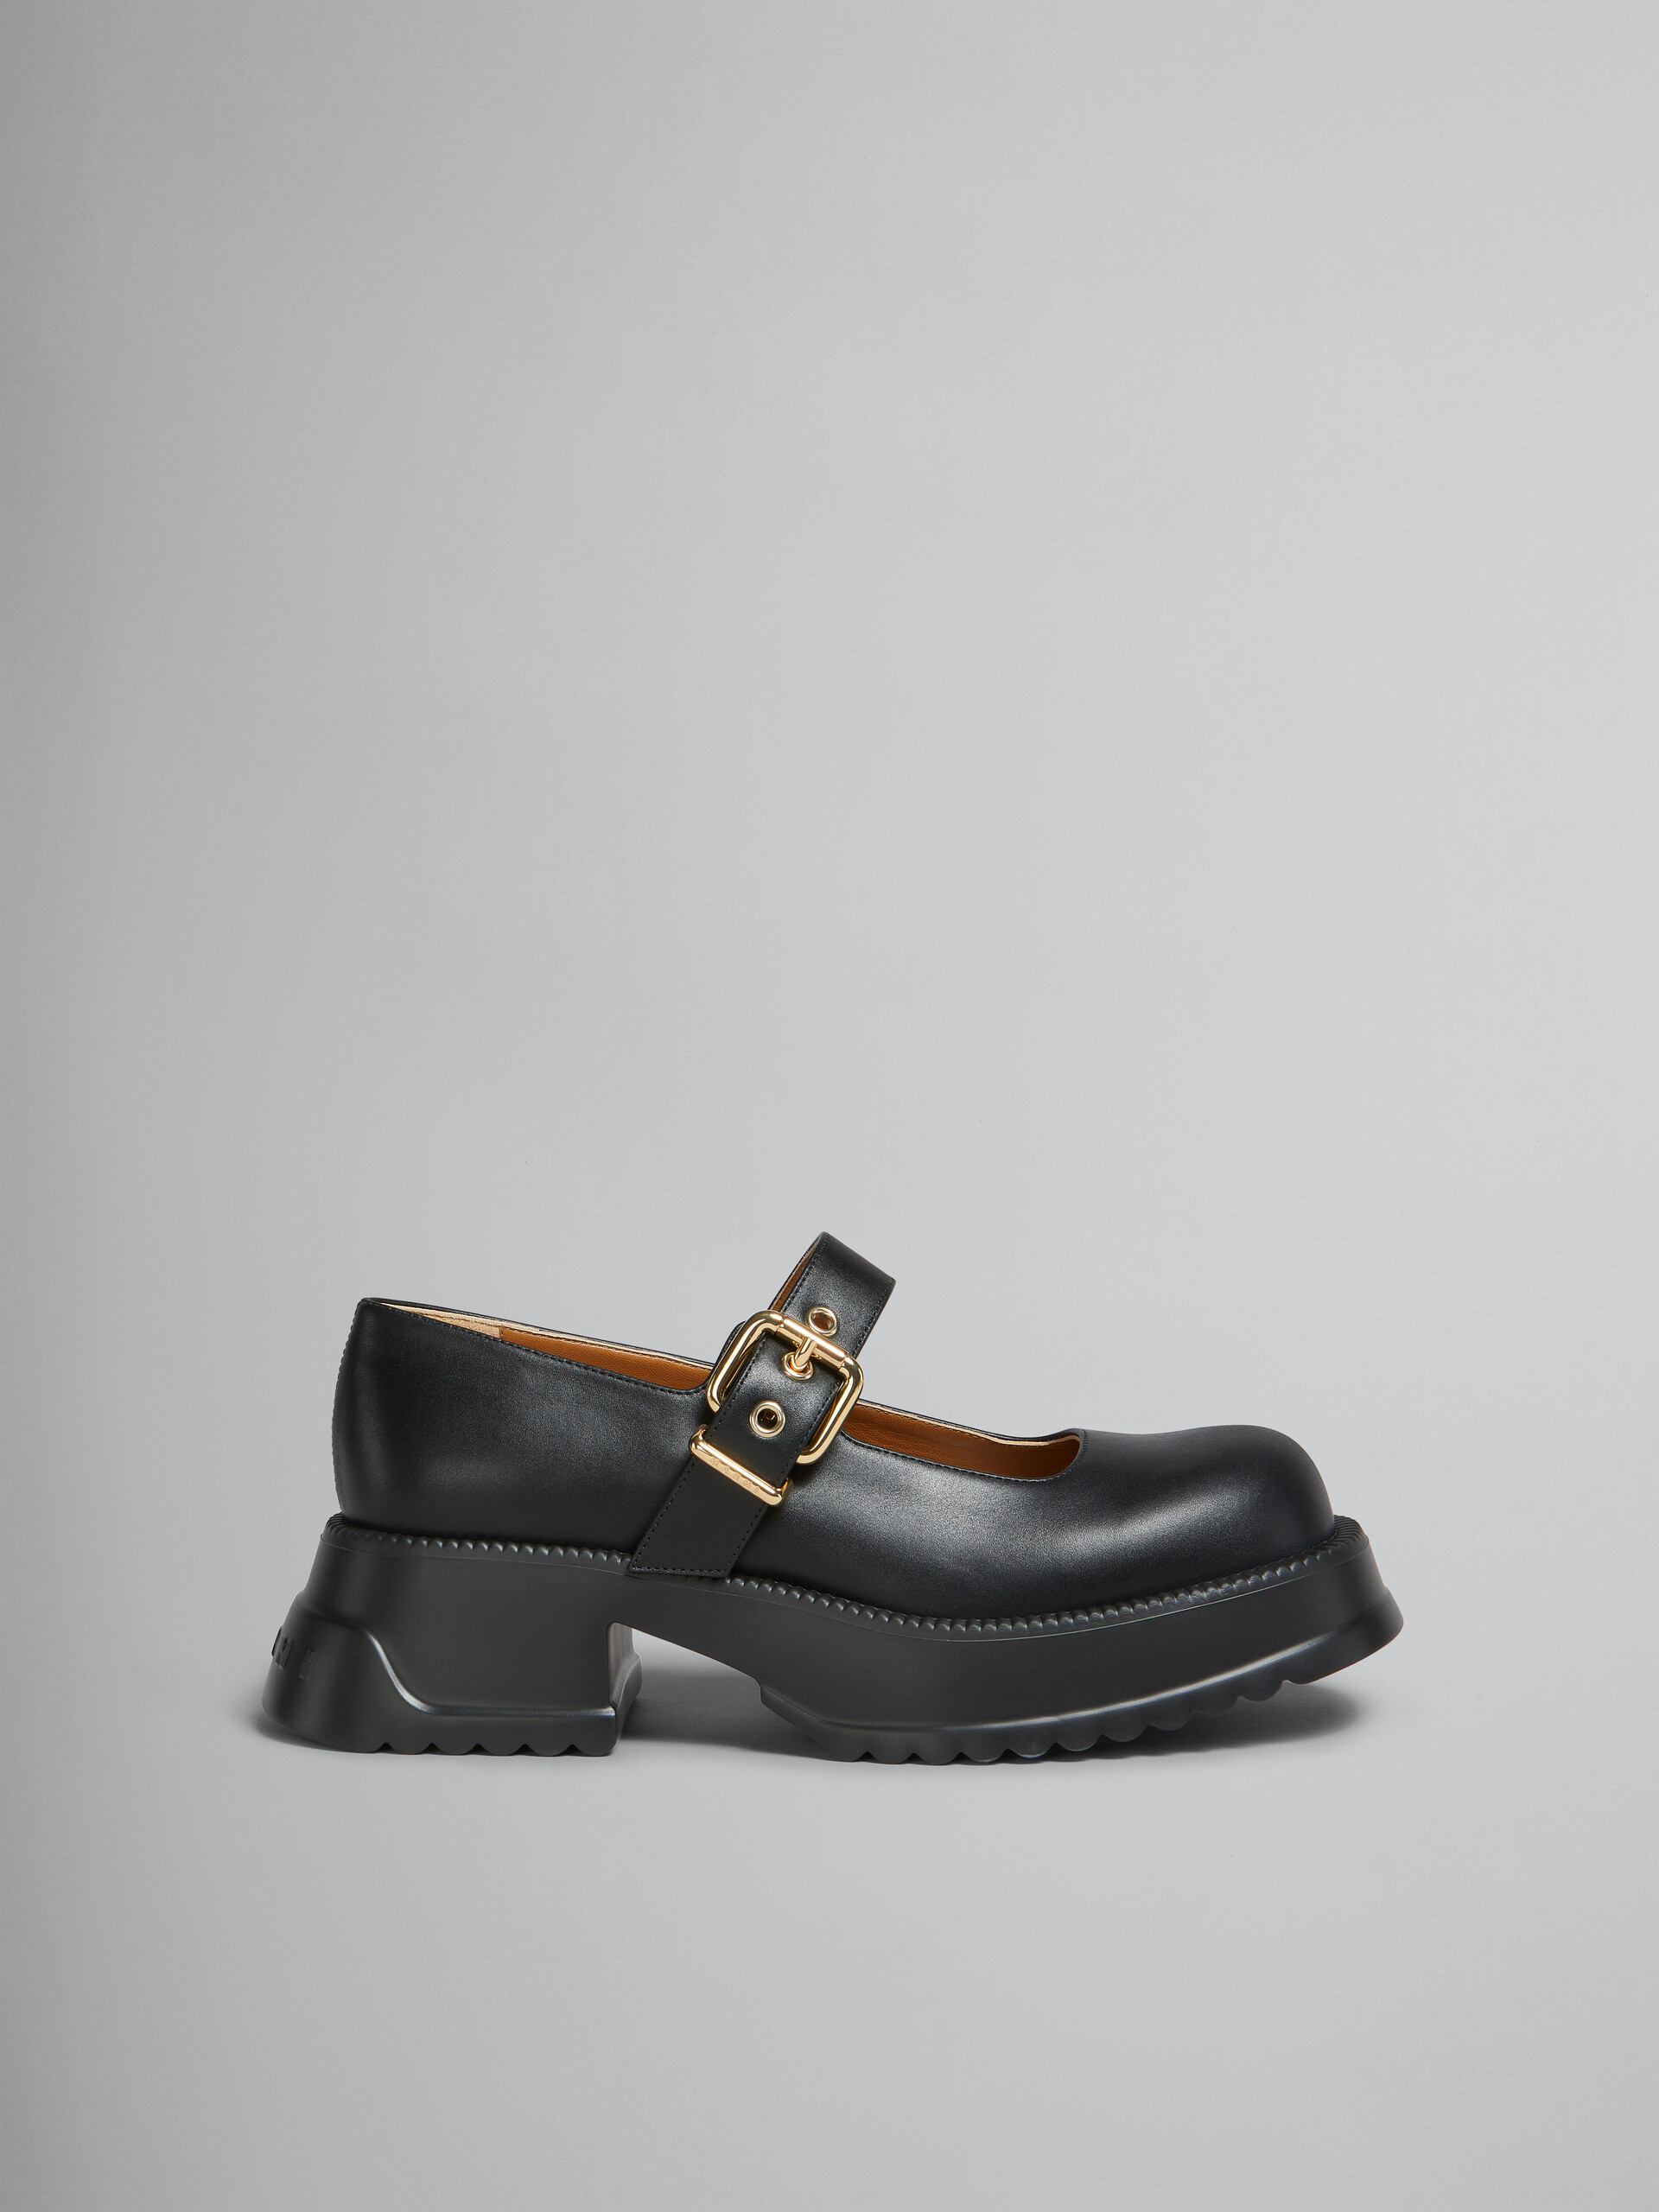 Zapatos estilo Mary Jane de piel negra con suela de plataforma - Sneakers - Image 1